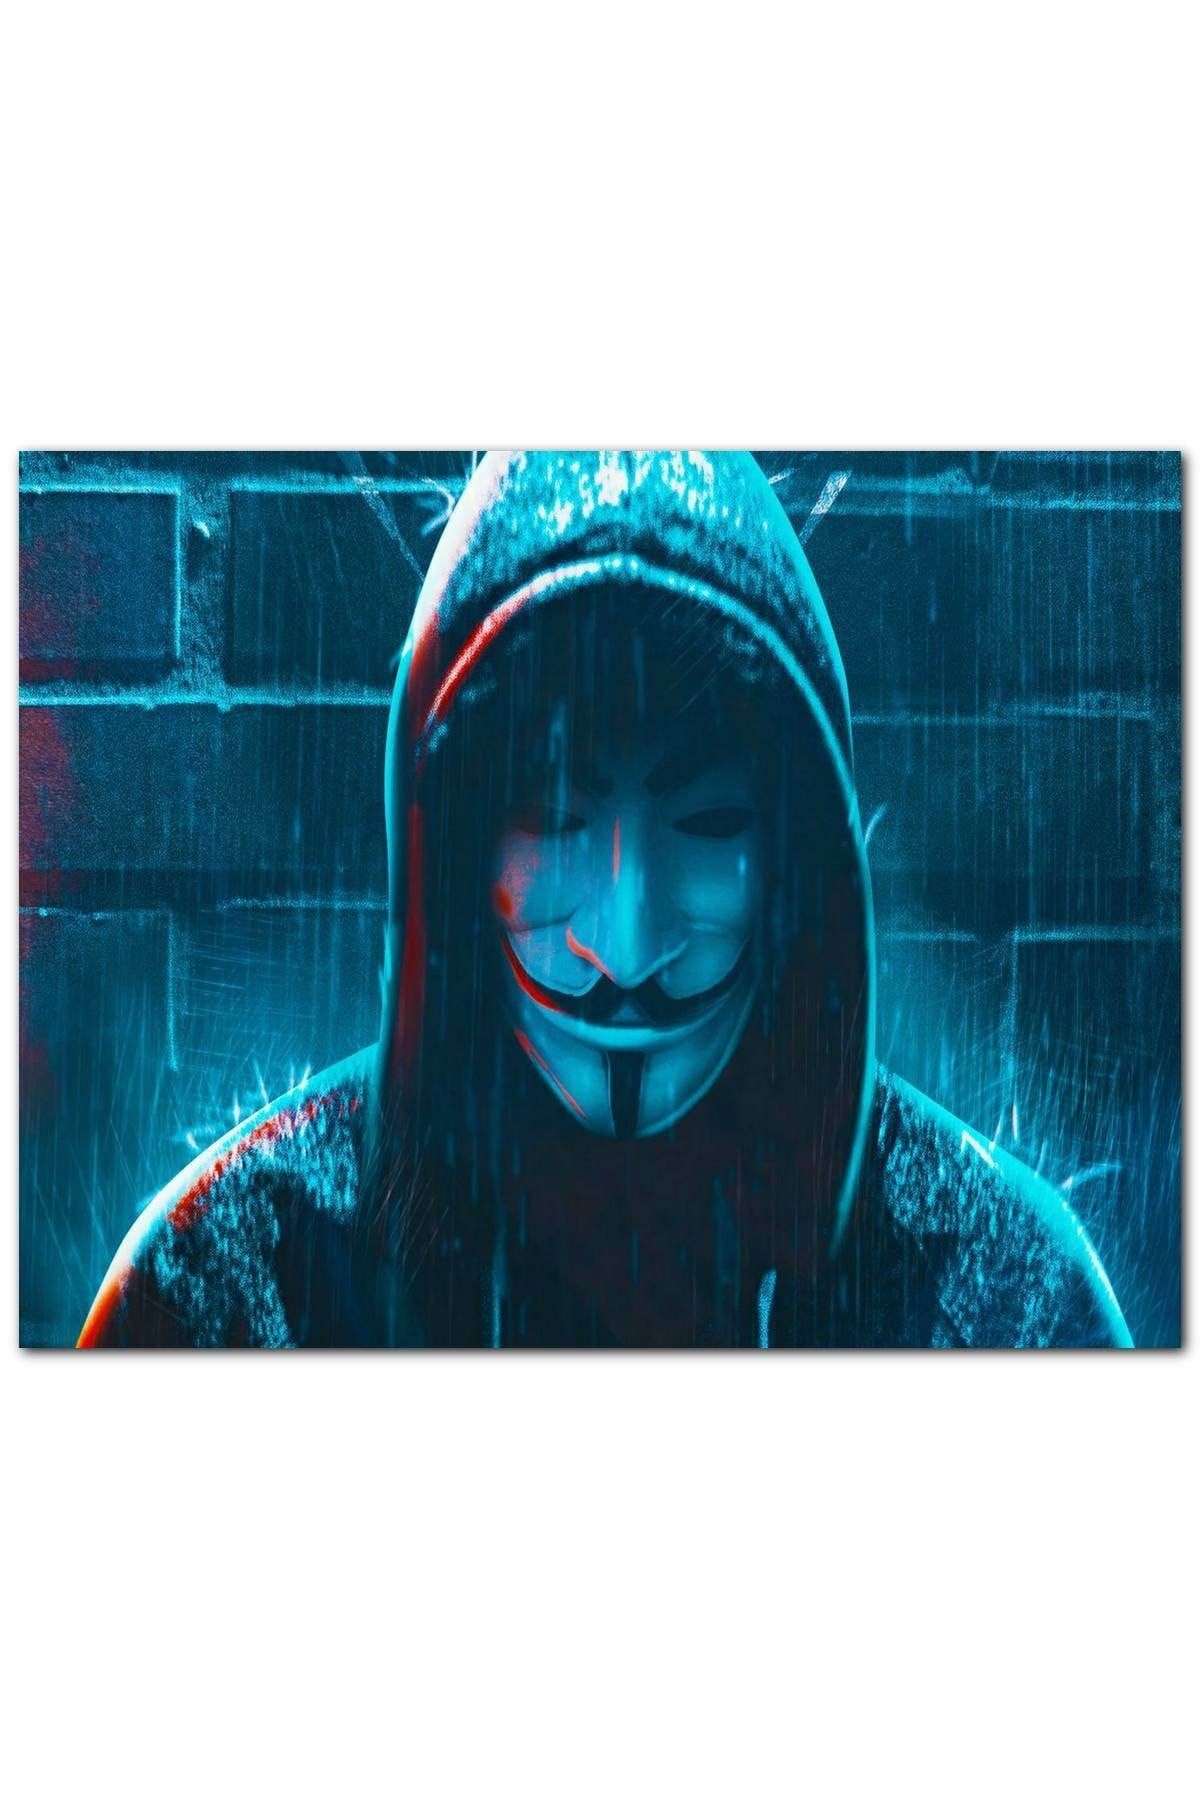 Cakatablo Ahşap Tablo Hacker Anonymous Maskeli Yağmur Altında (25x35 Cm Boyut)